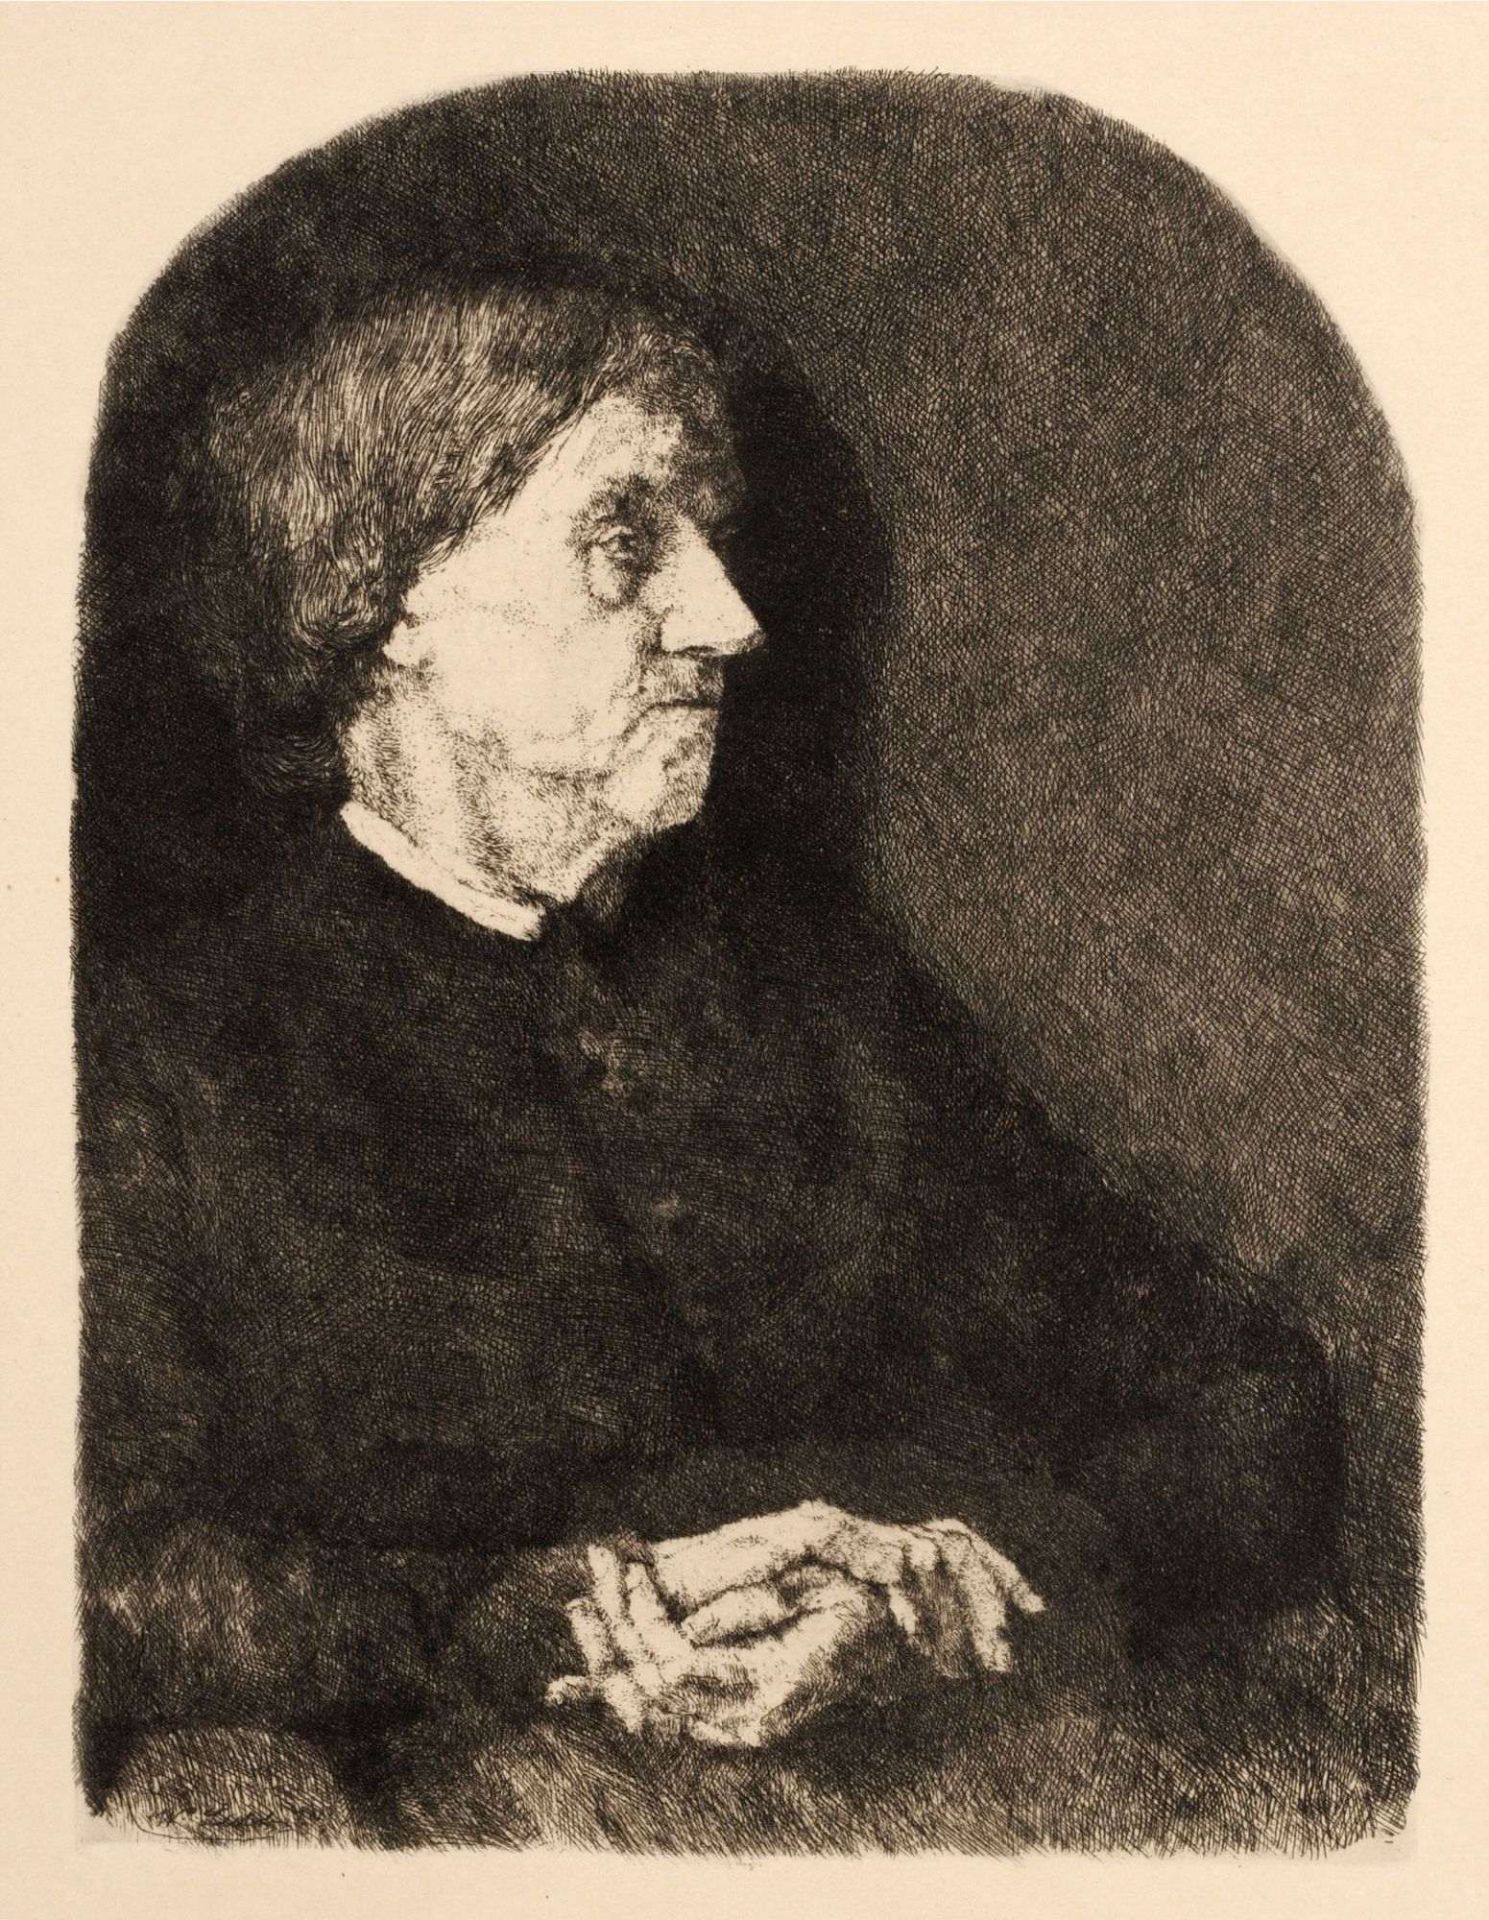 Wilhelm Maria Leibl "Bildnis einer alten Frau". 1874.